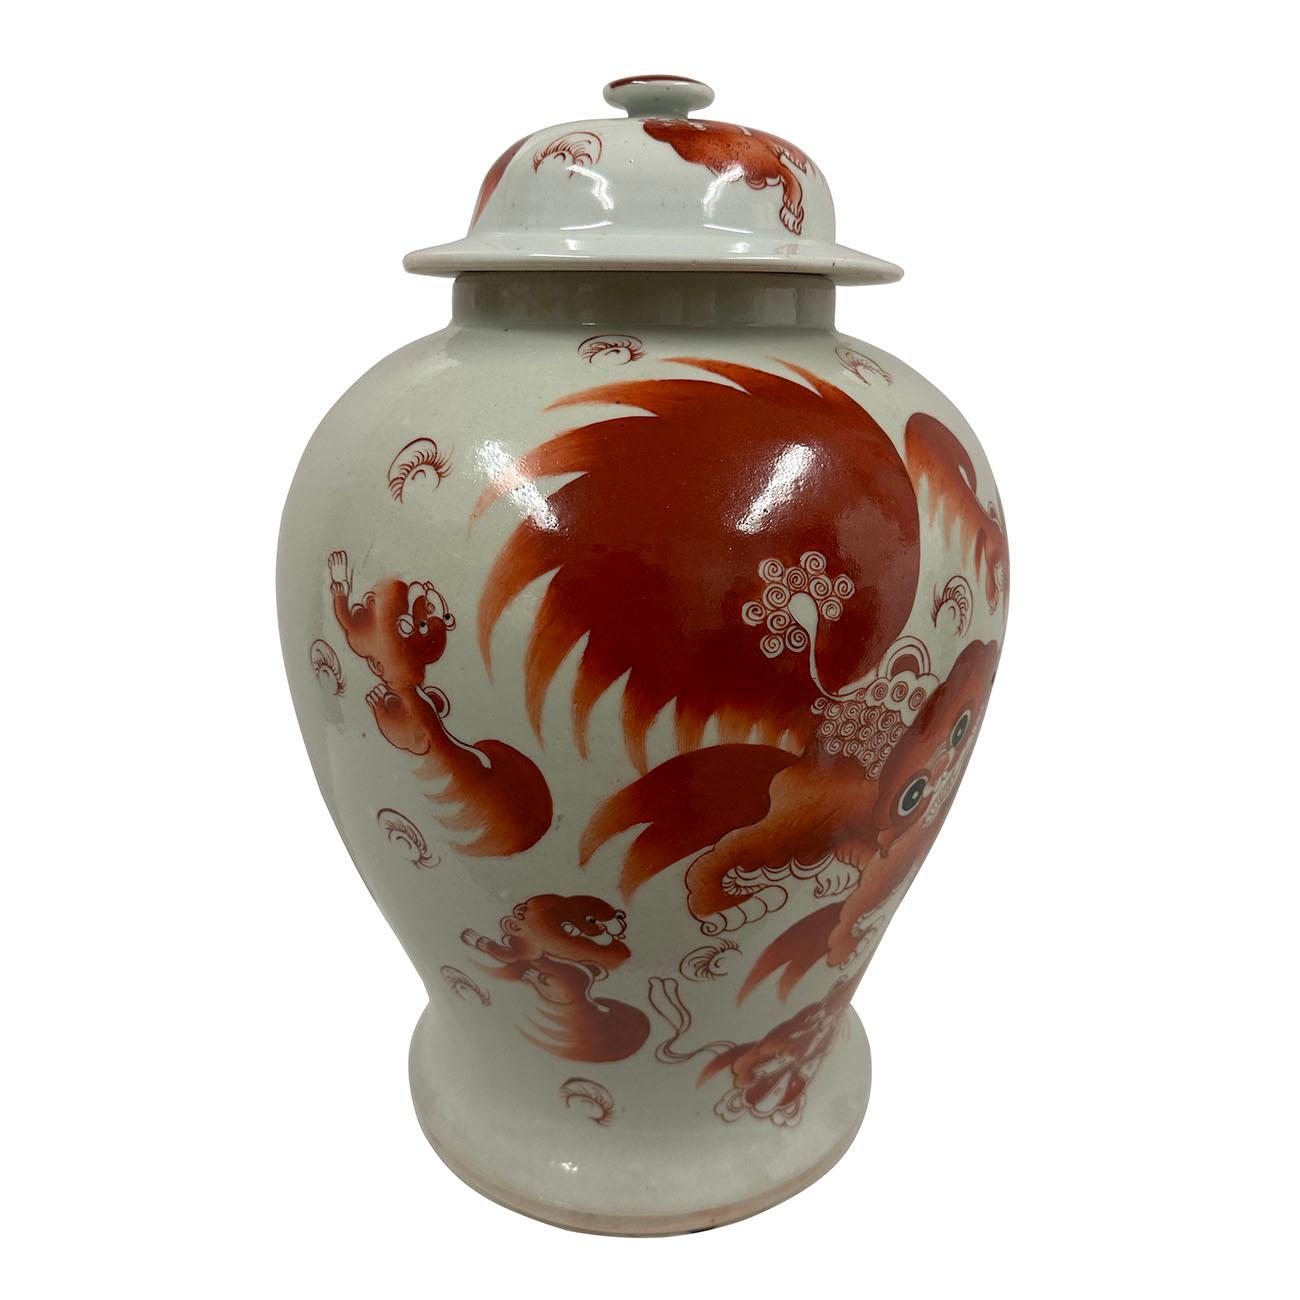 Ce magnifique pot à gingembre ancien en porcelaine de la famille rose chinoise a été réalisé et peint à la main à partir de la célèbre porcelaine de la famille rose chinoise. Le pot et le couvercle sont ornés de magnifiques chiens foo peints à la